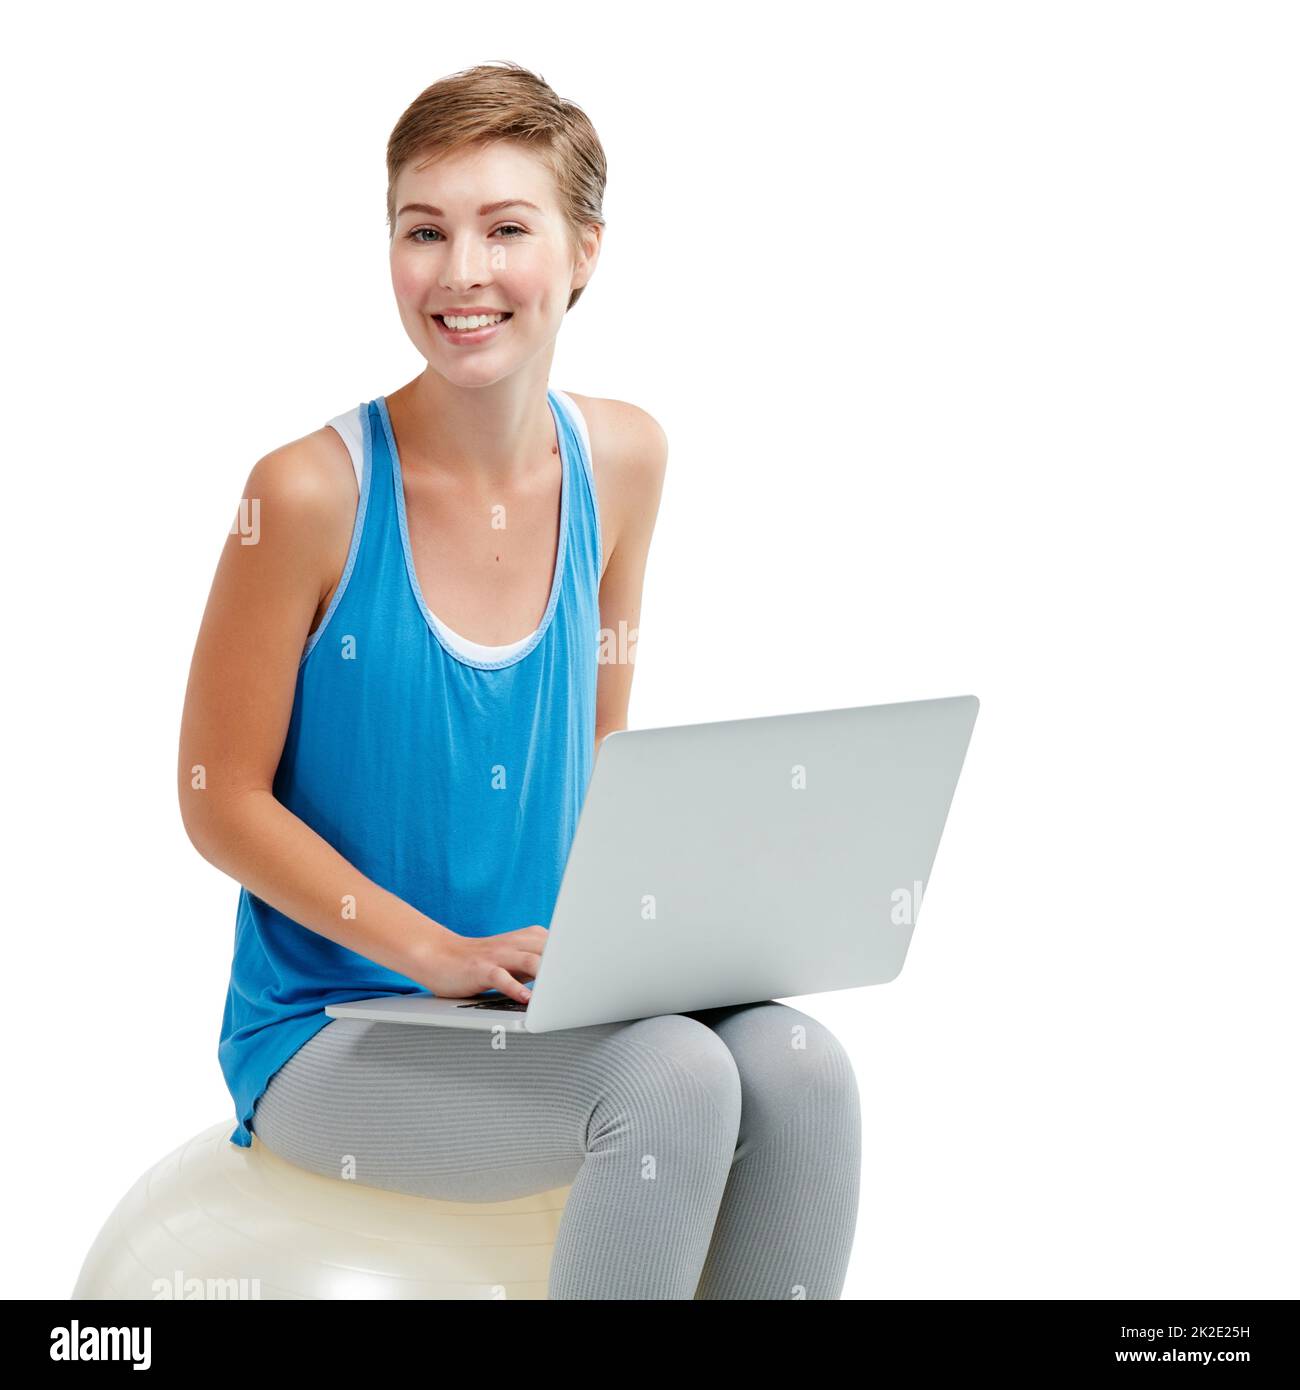 Warum unter Rückenschmerzen leiden, surfen Sie bequem. Aufnahme einer jungen Frau, die einen Laptop benutzt, während sie auf einem Übungsball sitzt. Stockfoto